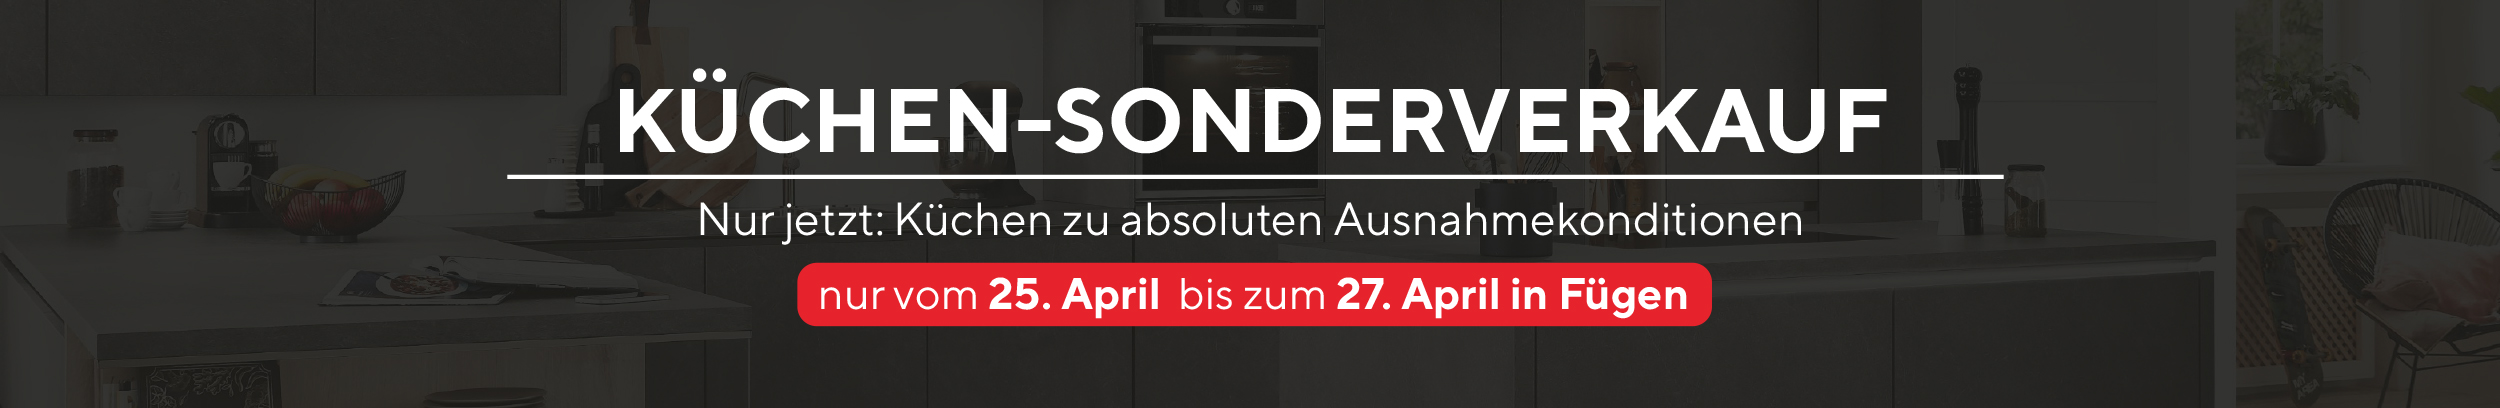 Nur jetzt: Küchen zu absoluten Ausnahmekonditionen in Fügen. Nur vom 25. - 27. April!